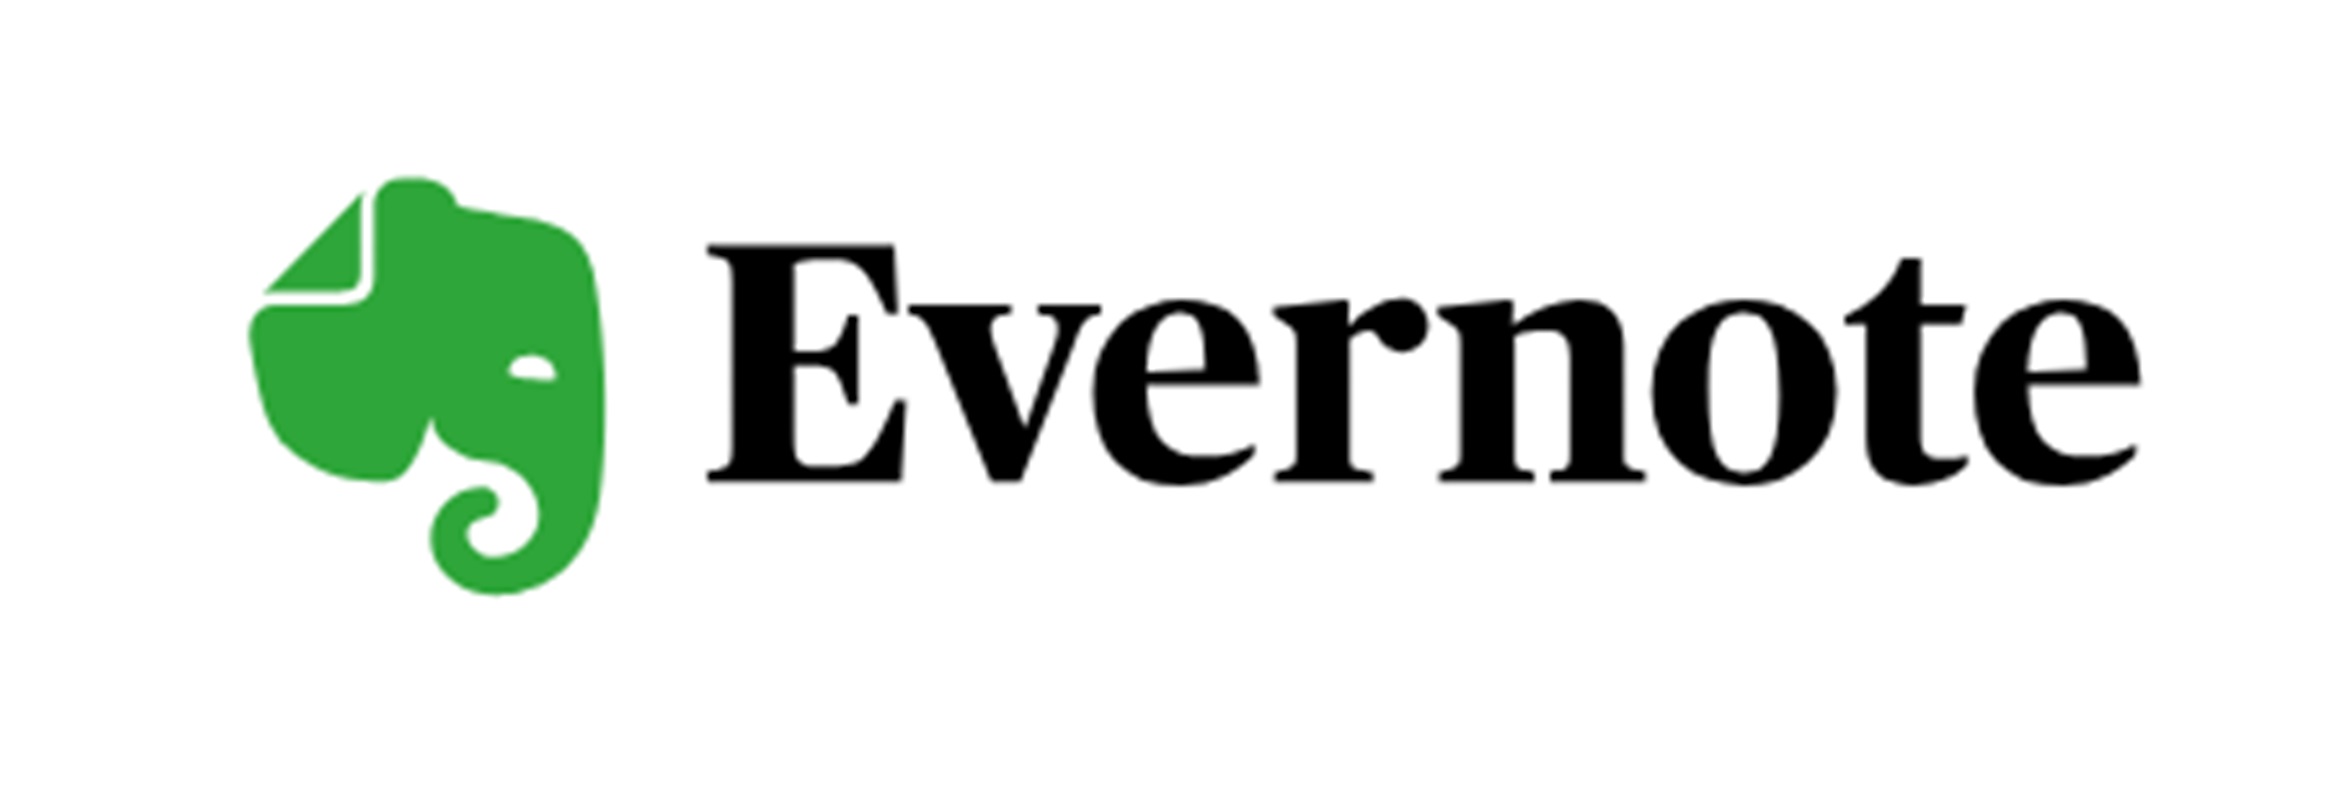 Evernote logo